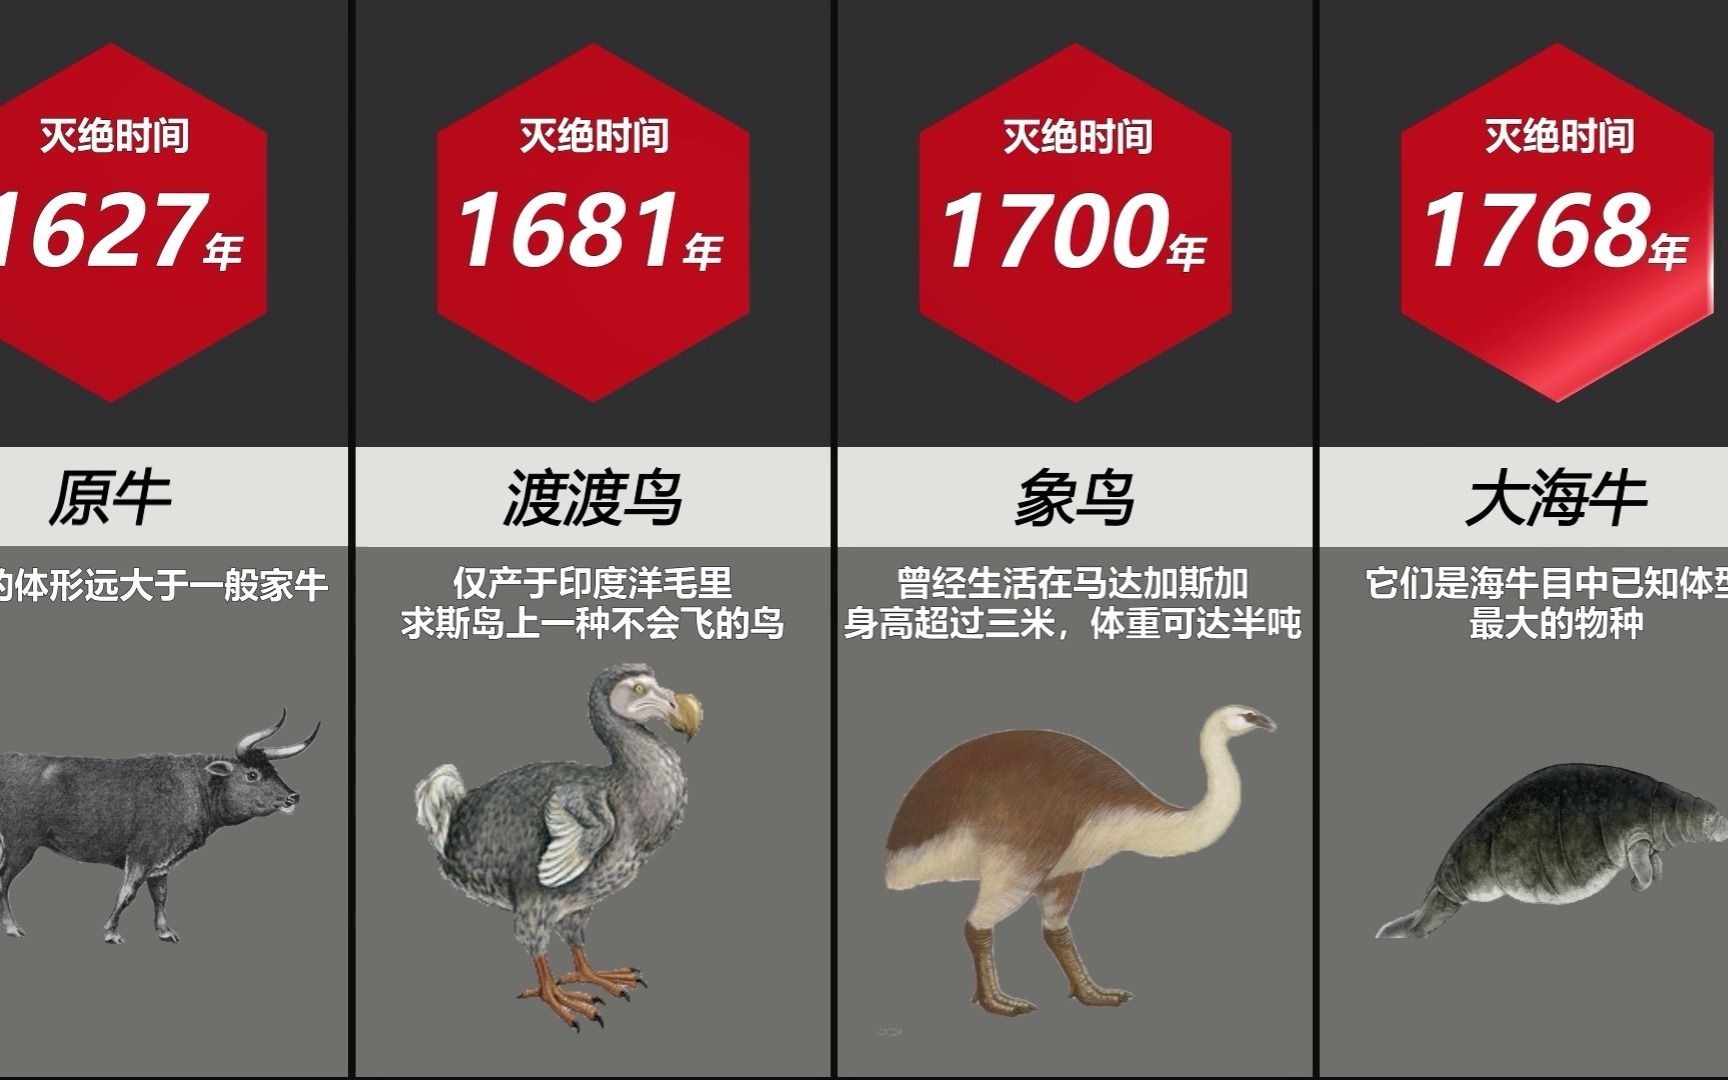 史前灭绝动物名单图片